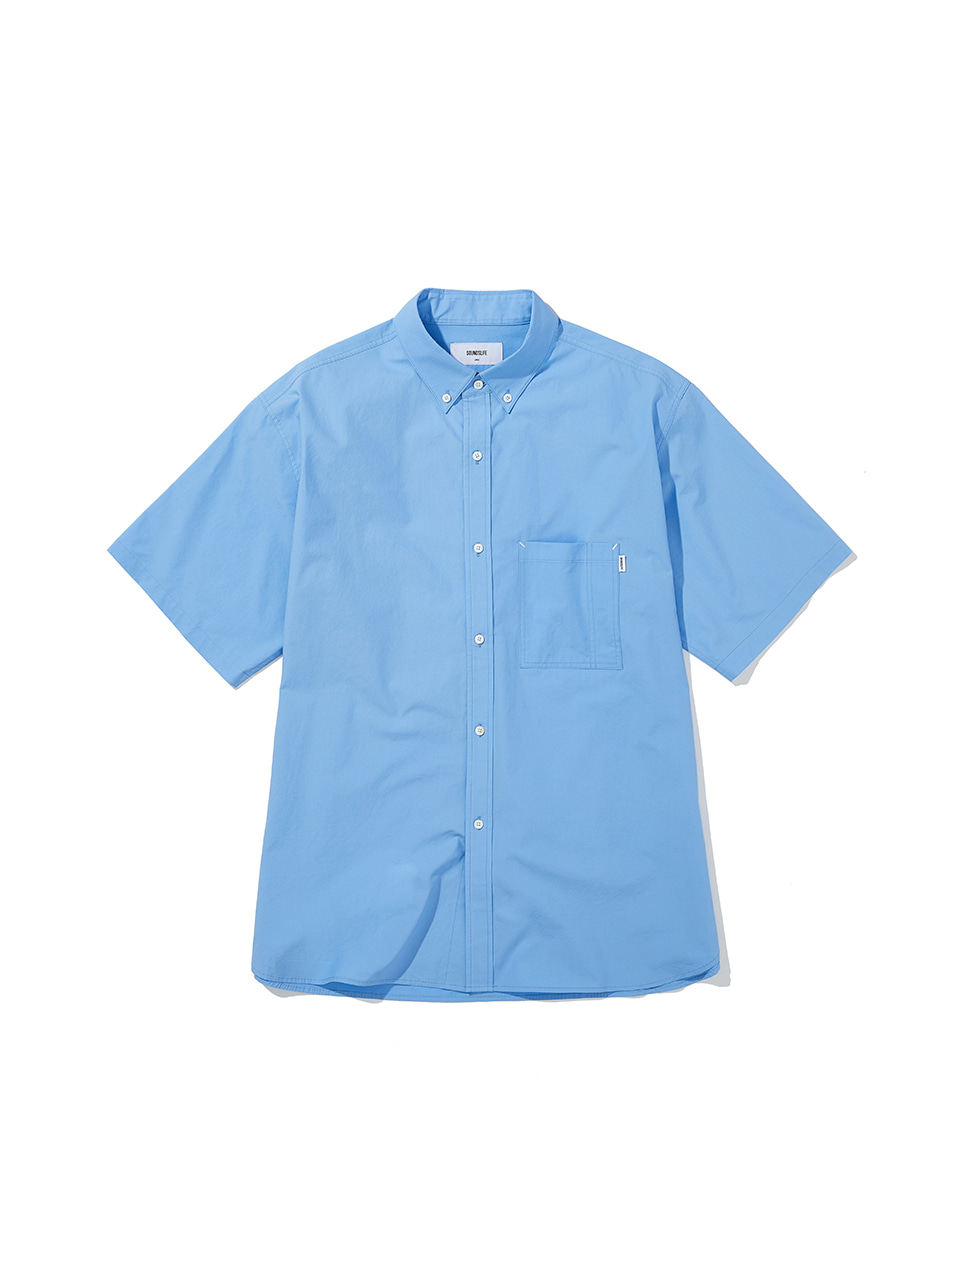 SOUNDSLIFE - Big Fit Short Sleeve Shirt Blue